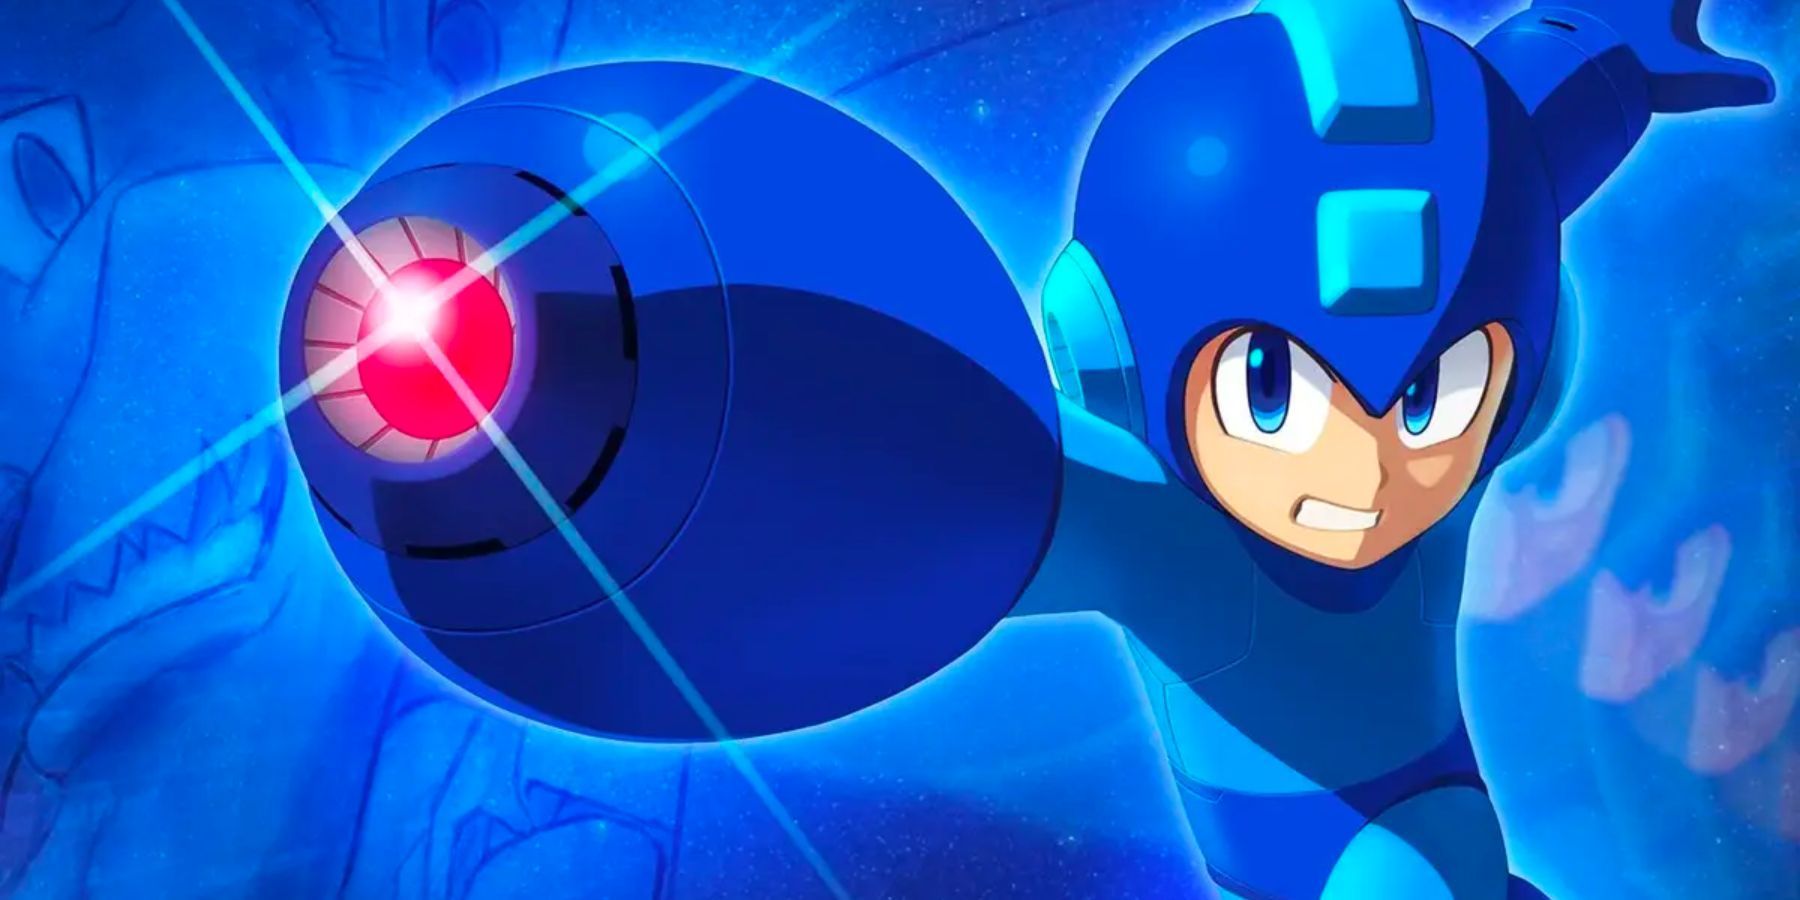 Mega Man 11 Art